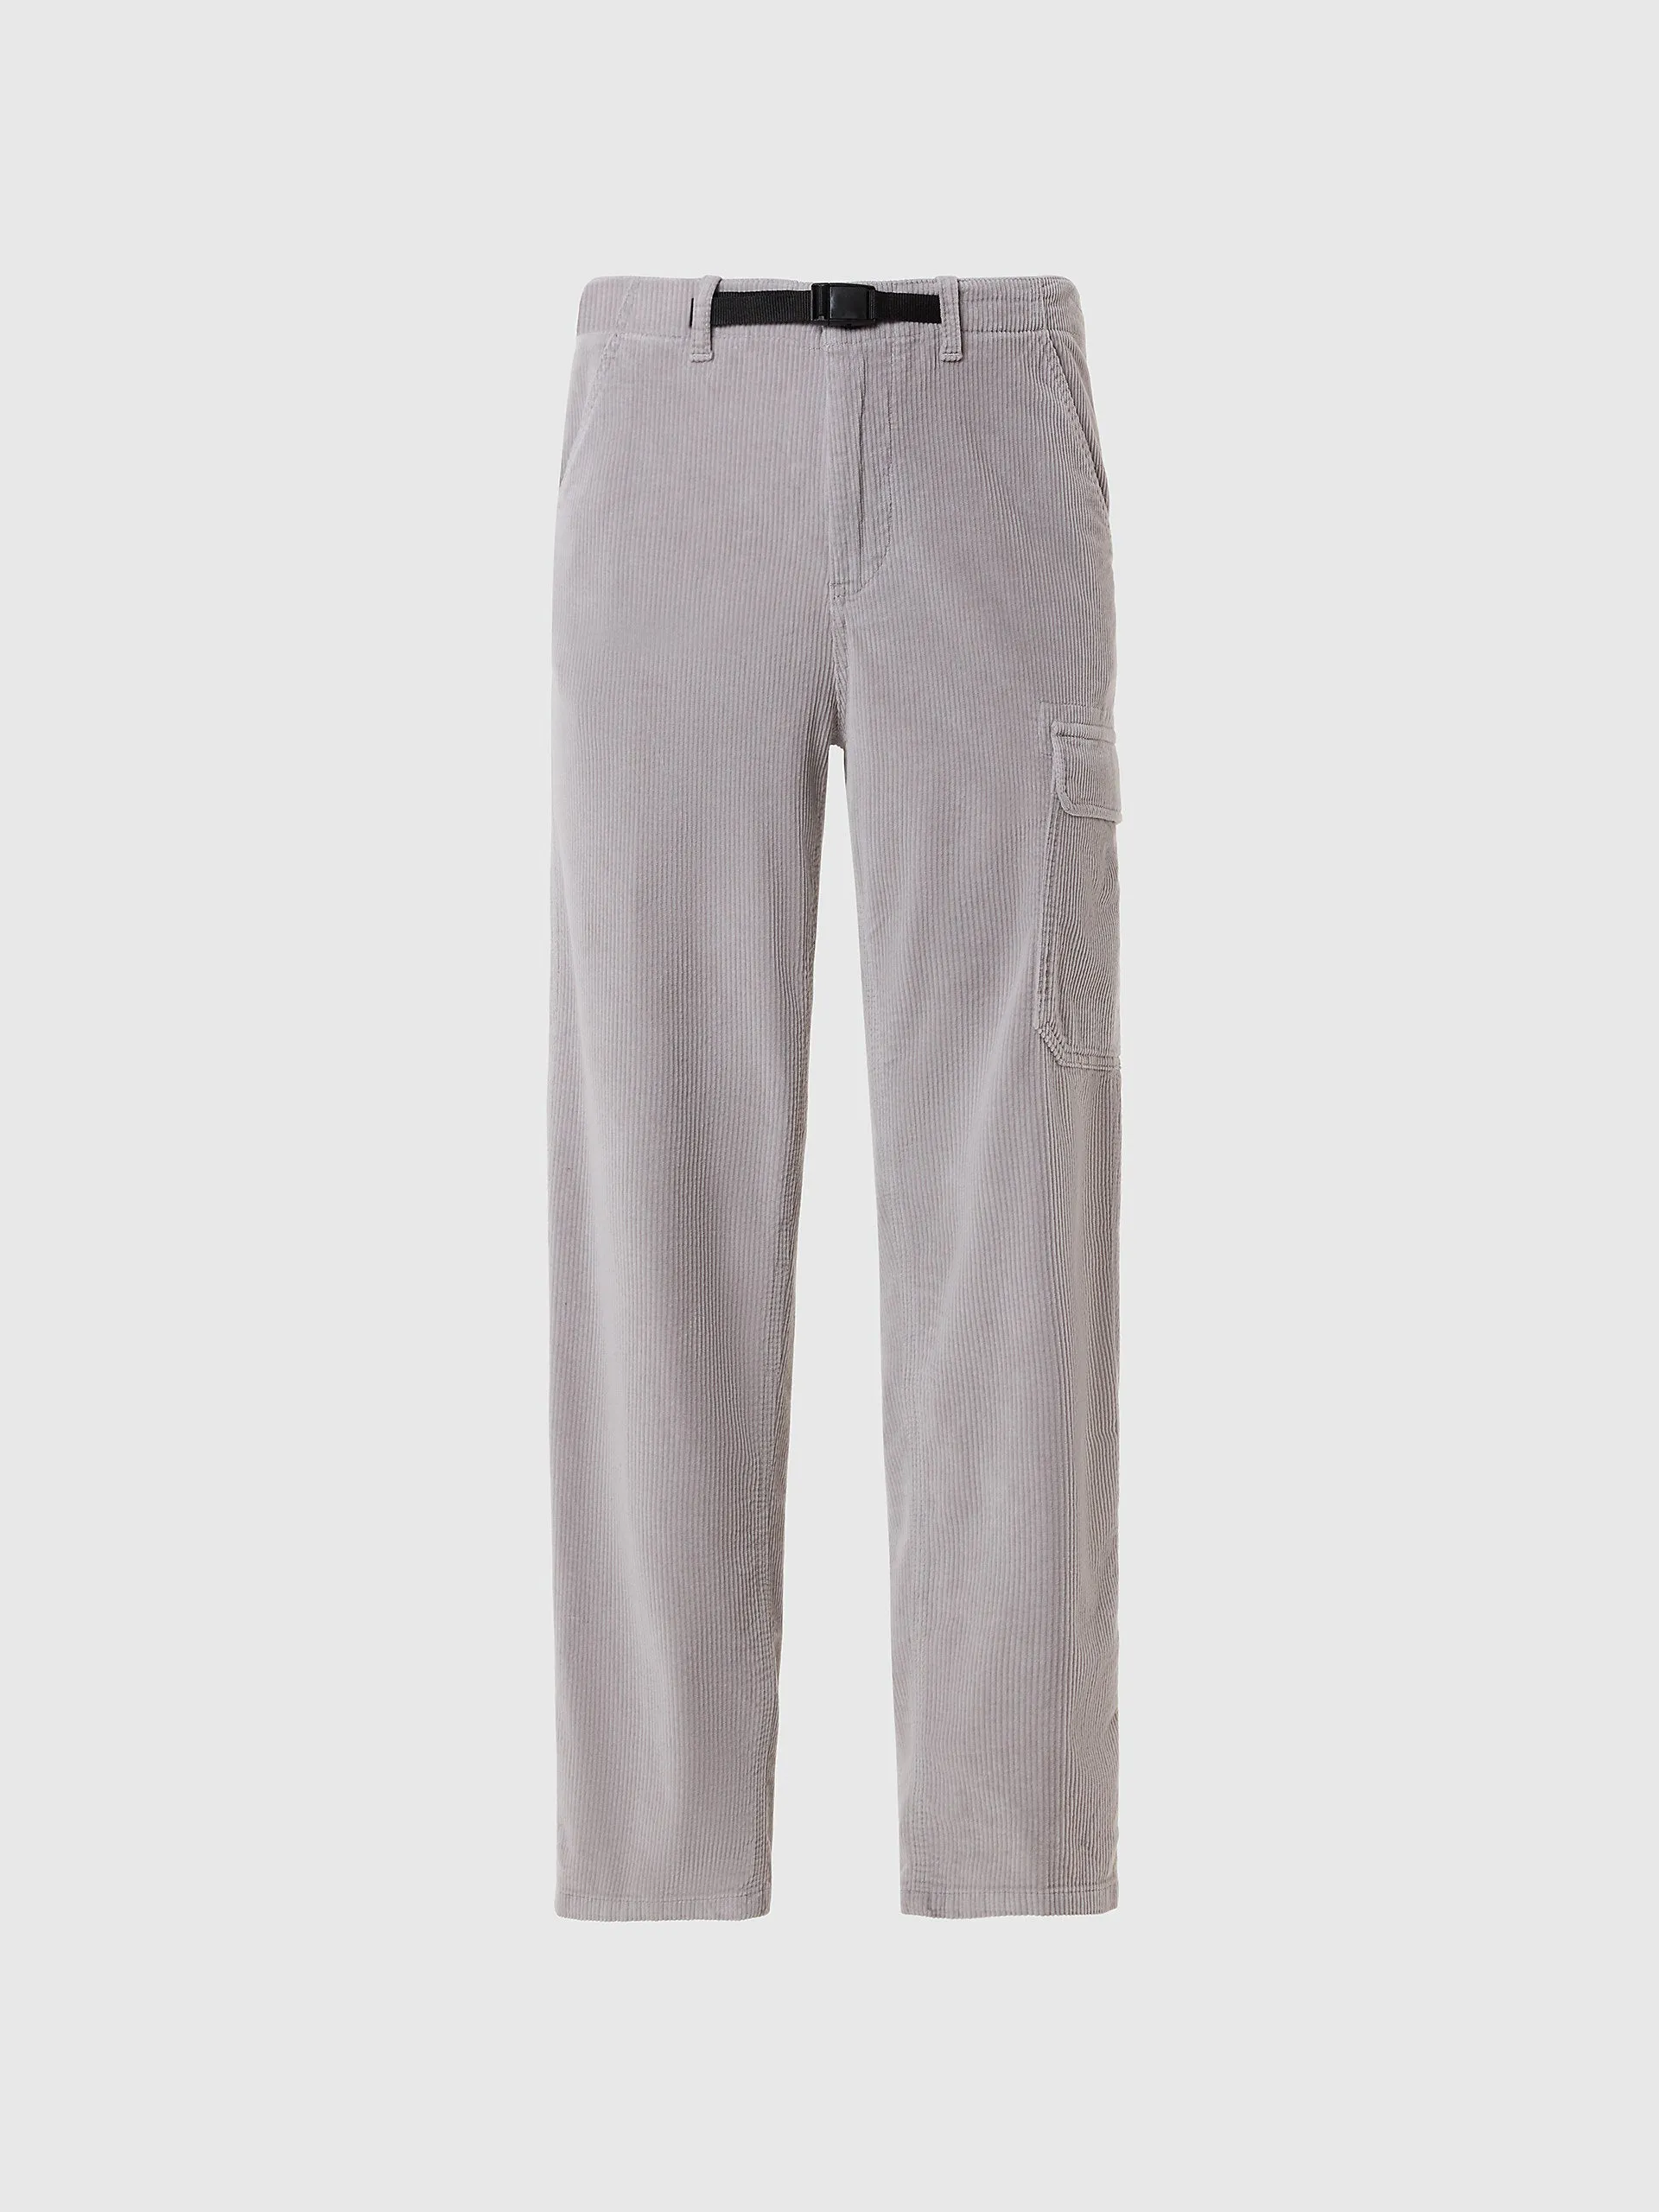  - Pantaloni cargoConcrete grey42